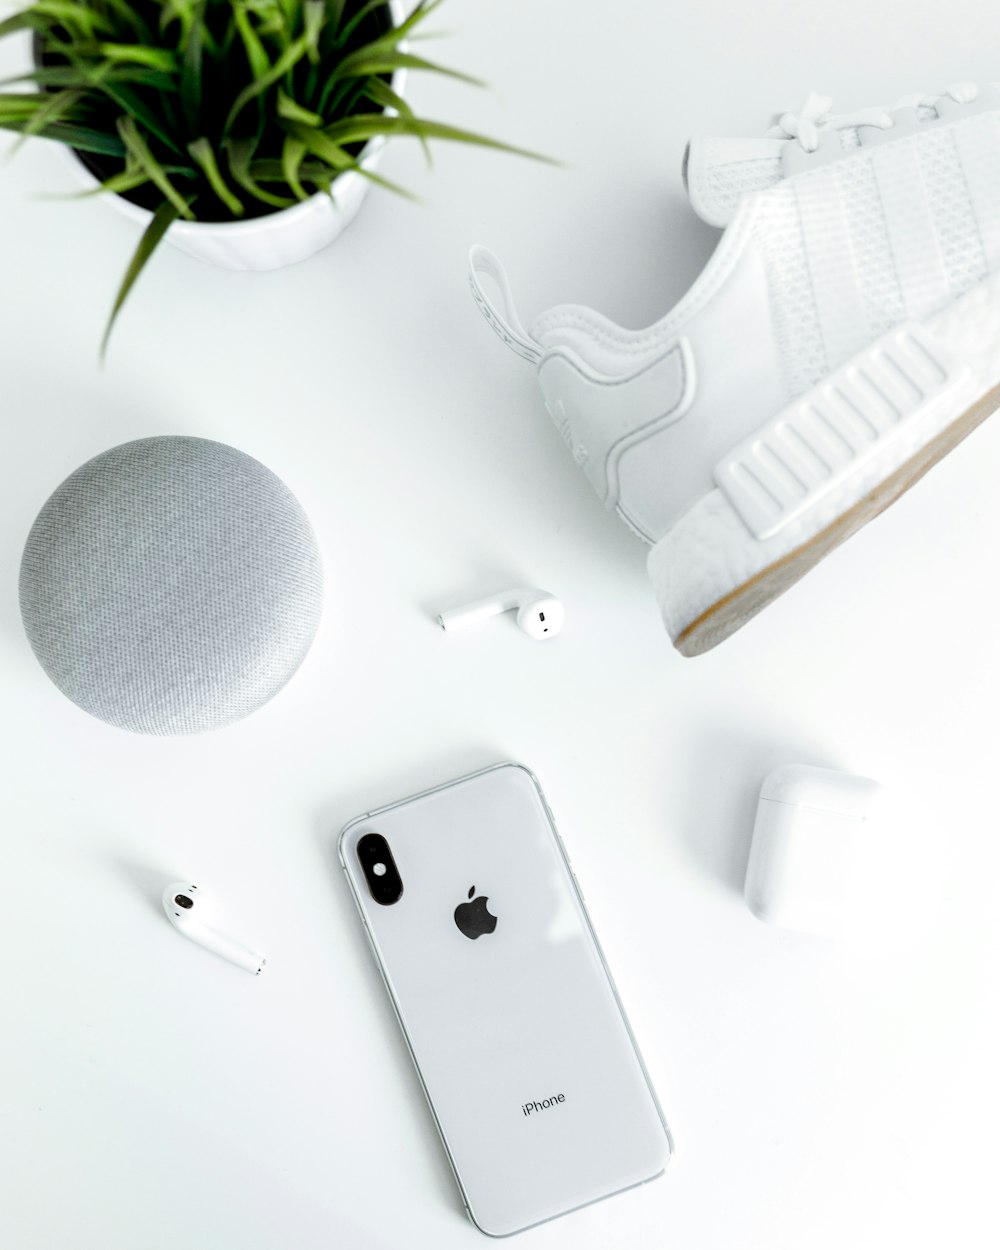 silbernes iPhone X in der Nähe von weißem adidas NMD-Schuh, AirPods mit Hülle und Kreide Google Home Mini